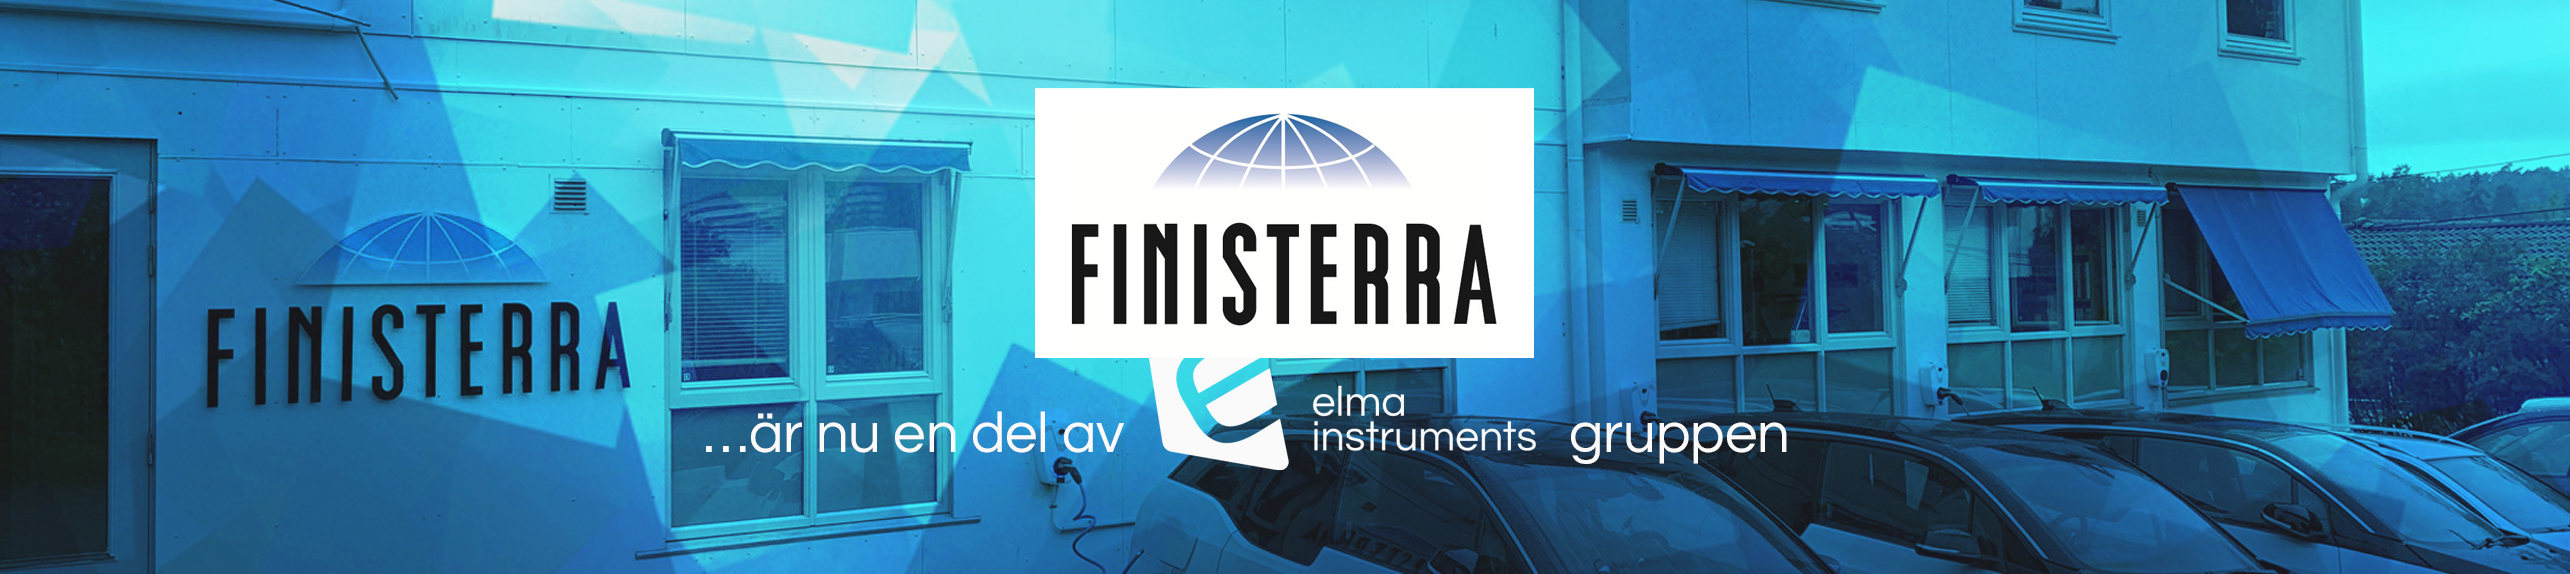 Finisterra är nu en del av Elma Instruments-gruppen